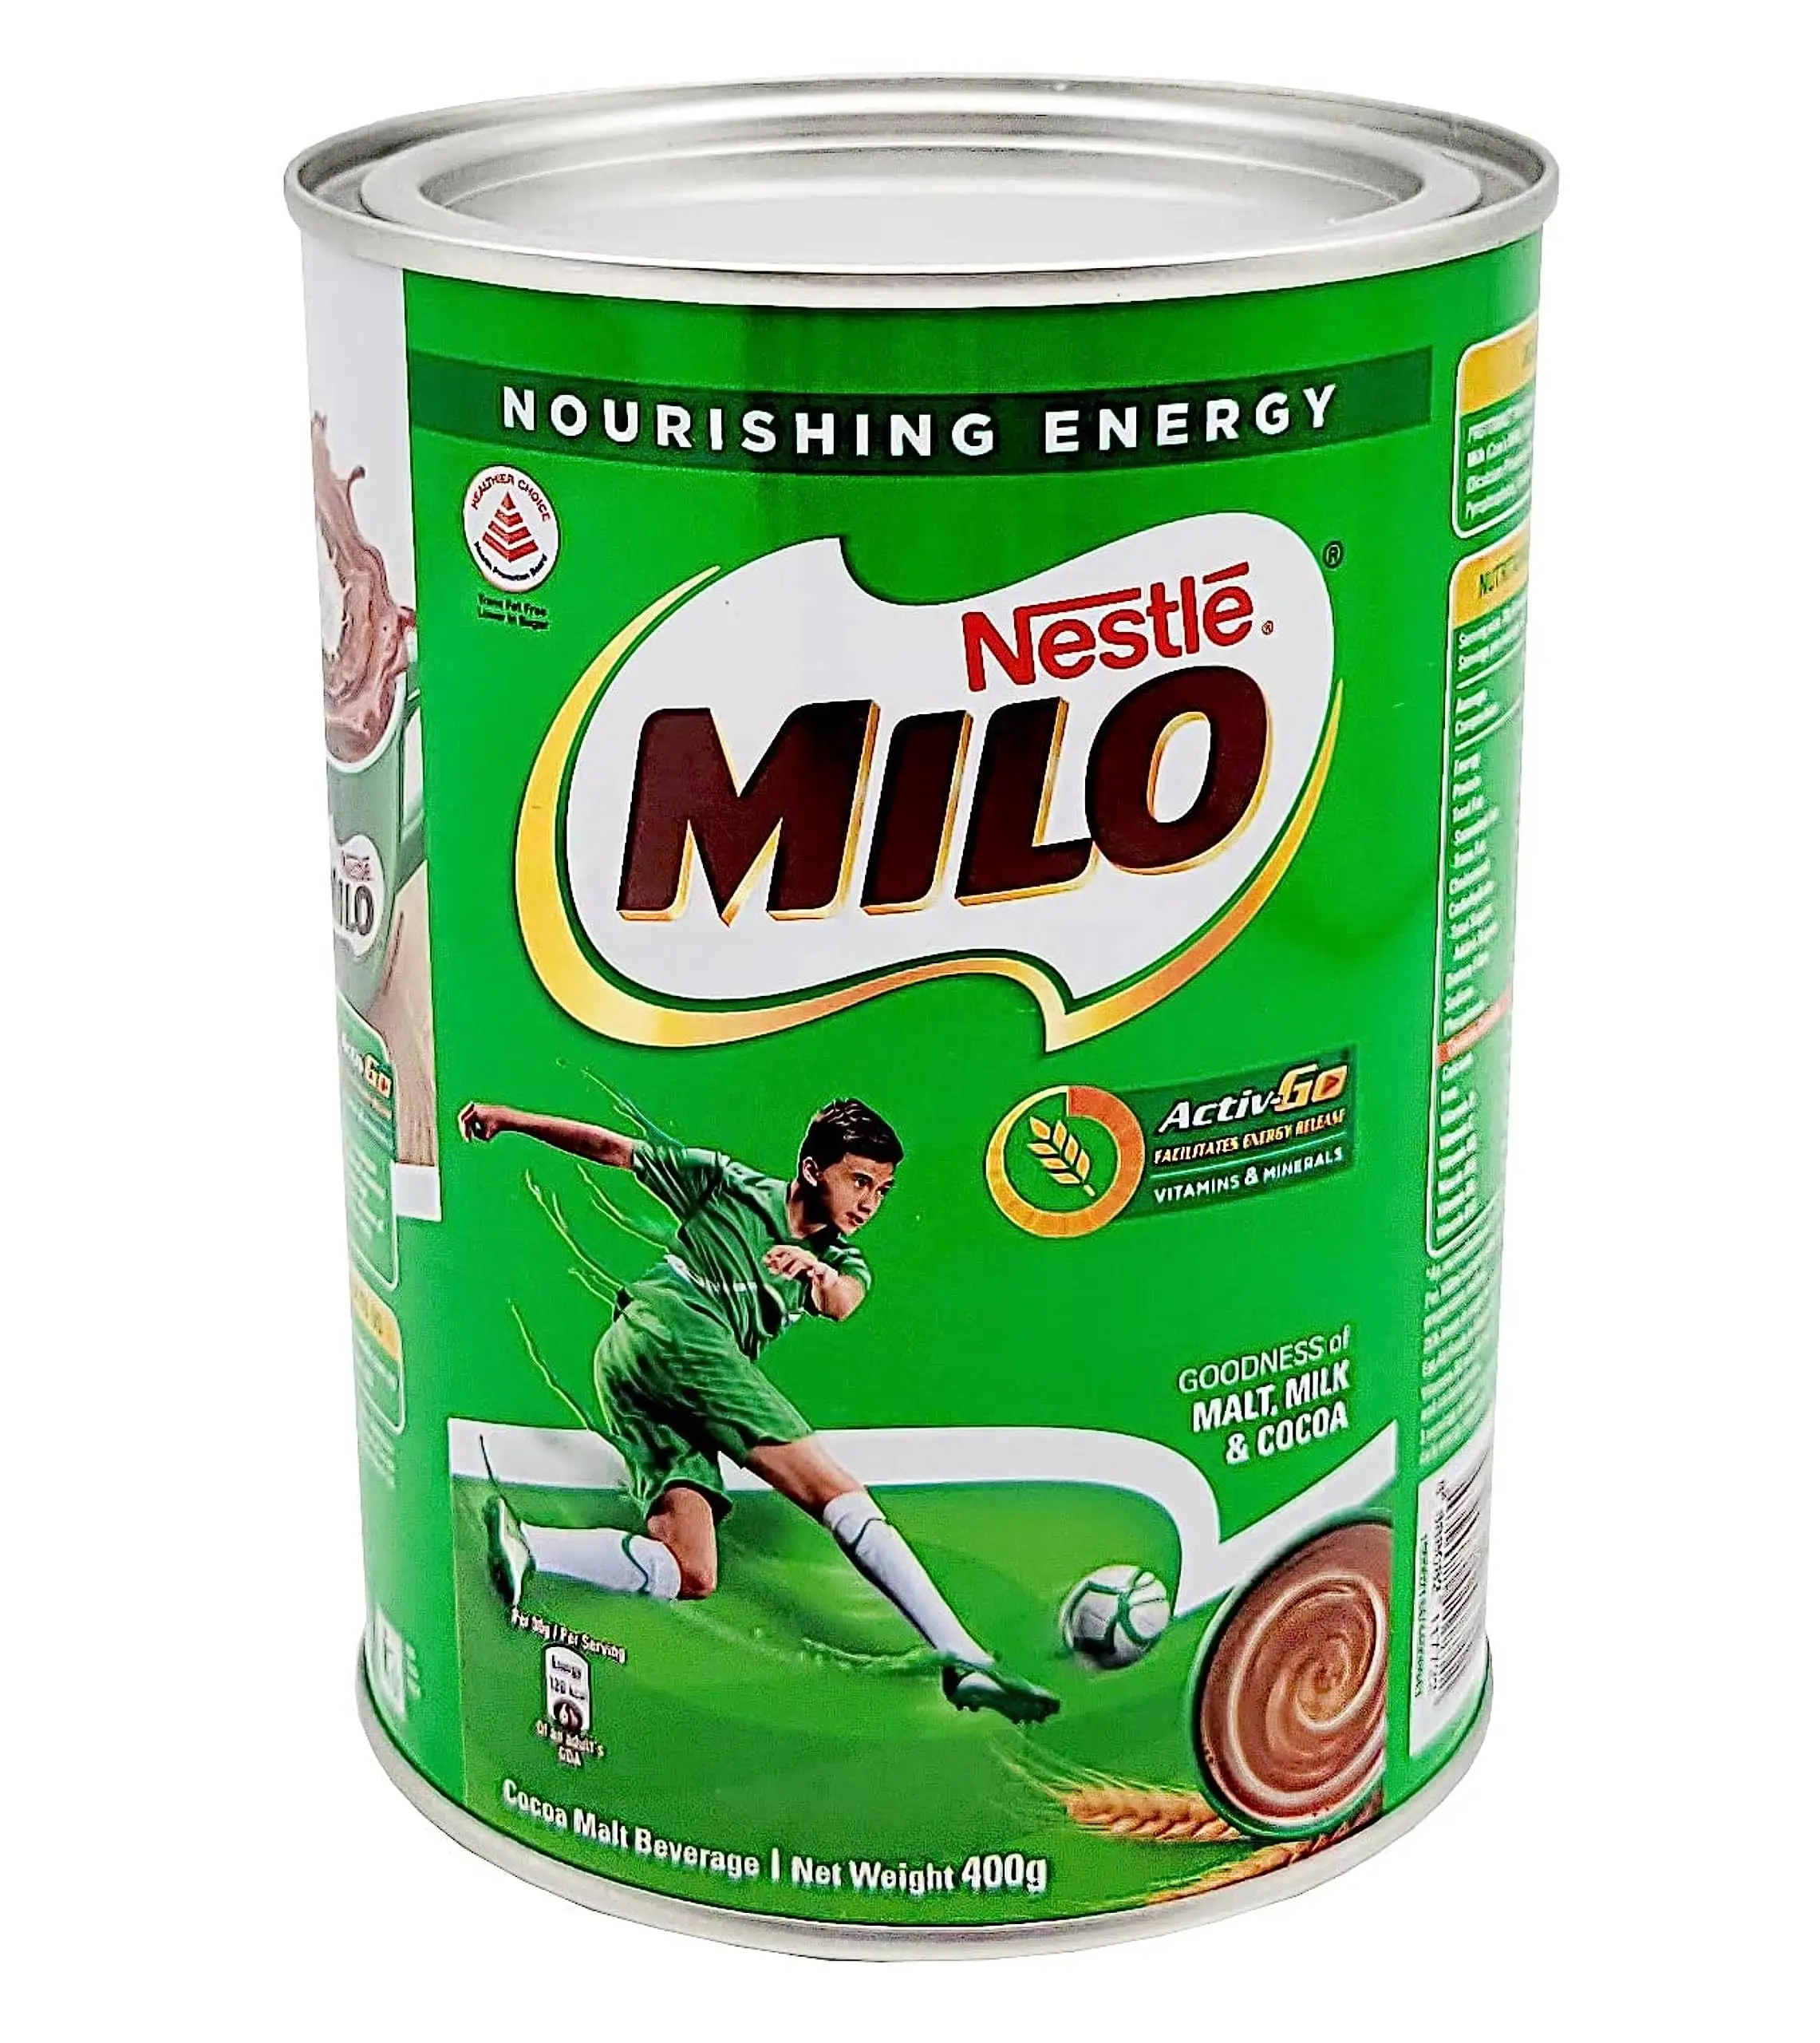 Fornecedor direto de bebidas Nestlé Milo, Nestlé Milo de lata, Nestlé Milo em pó a preço de atacado